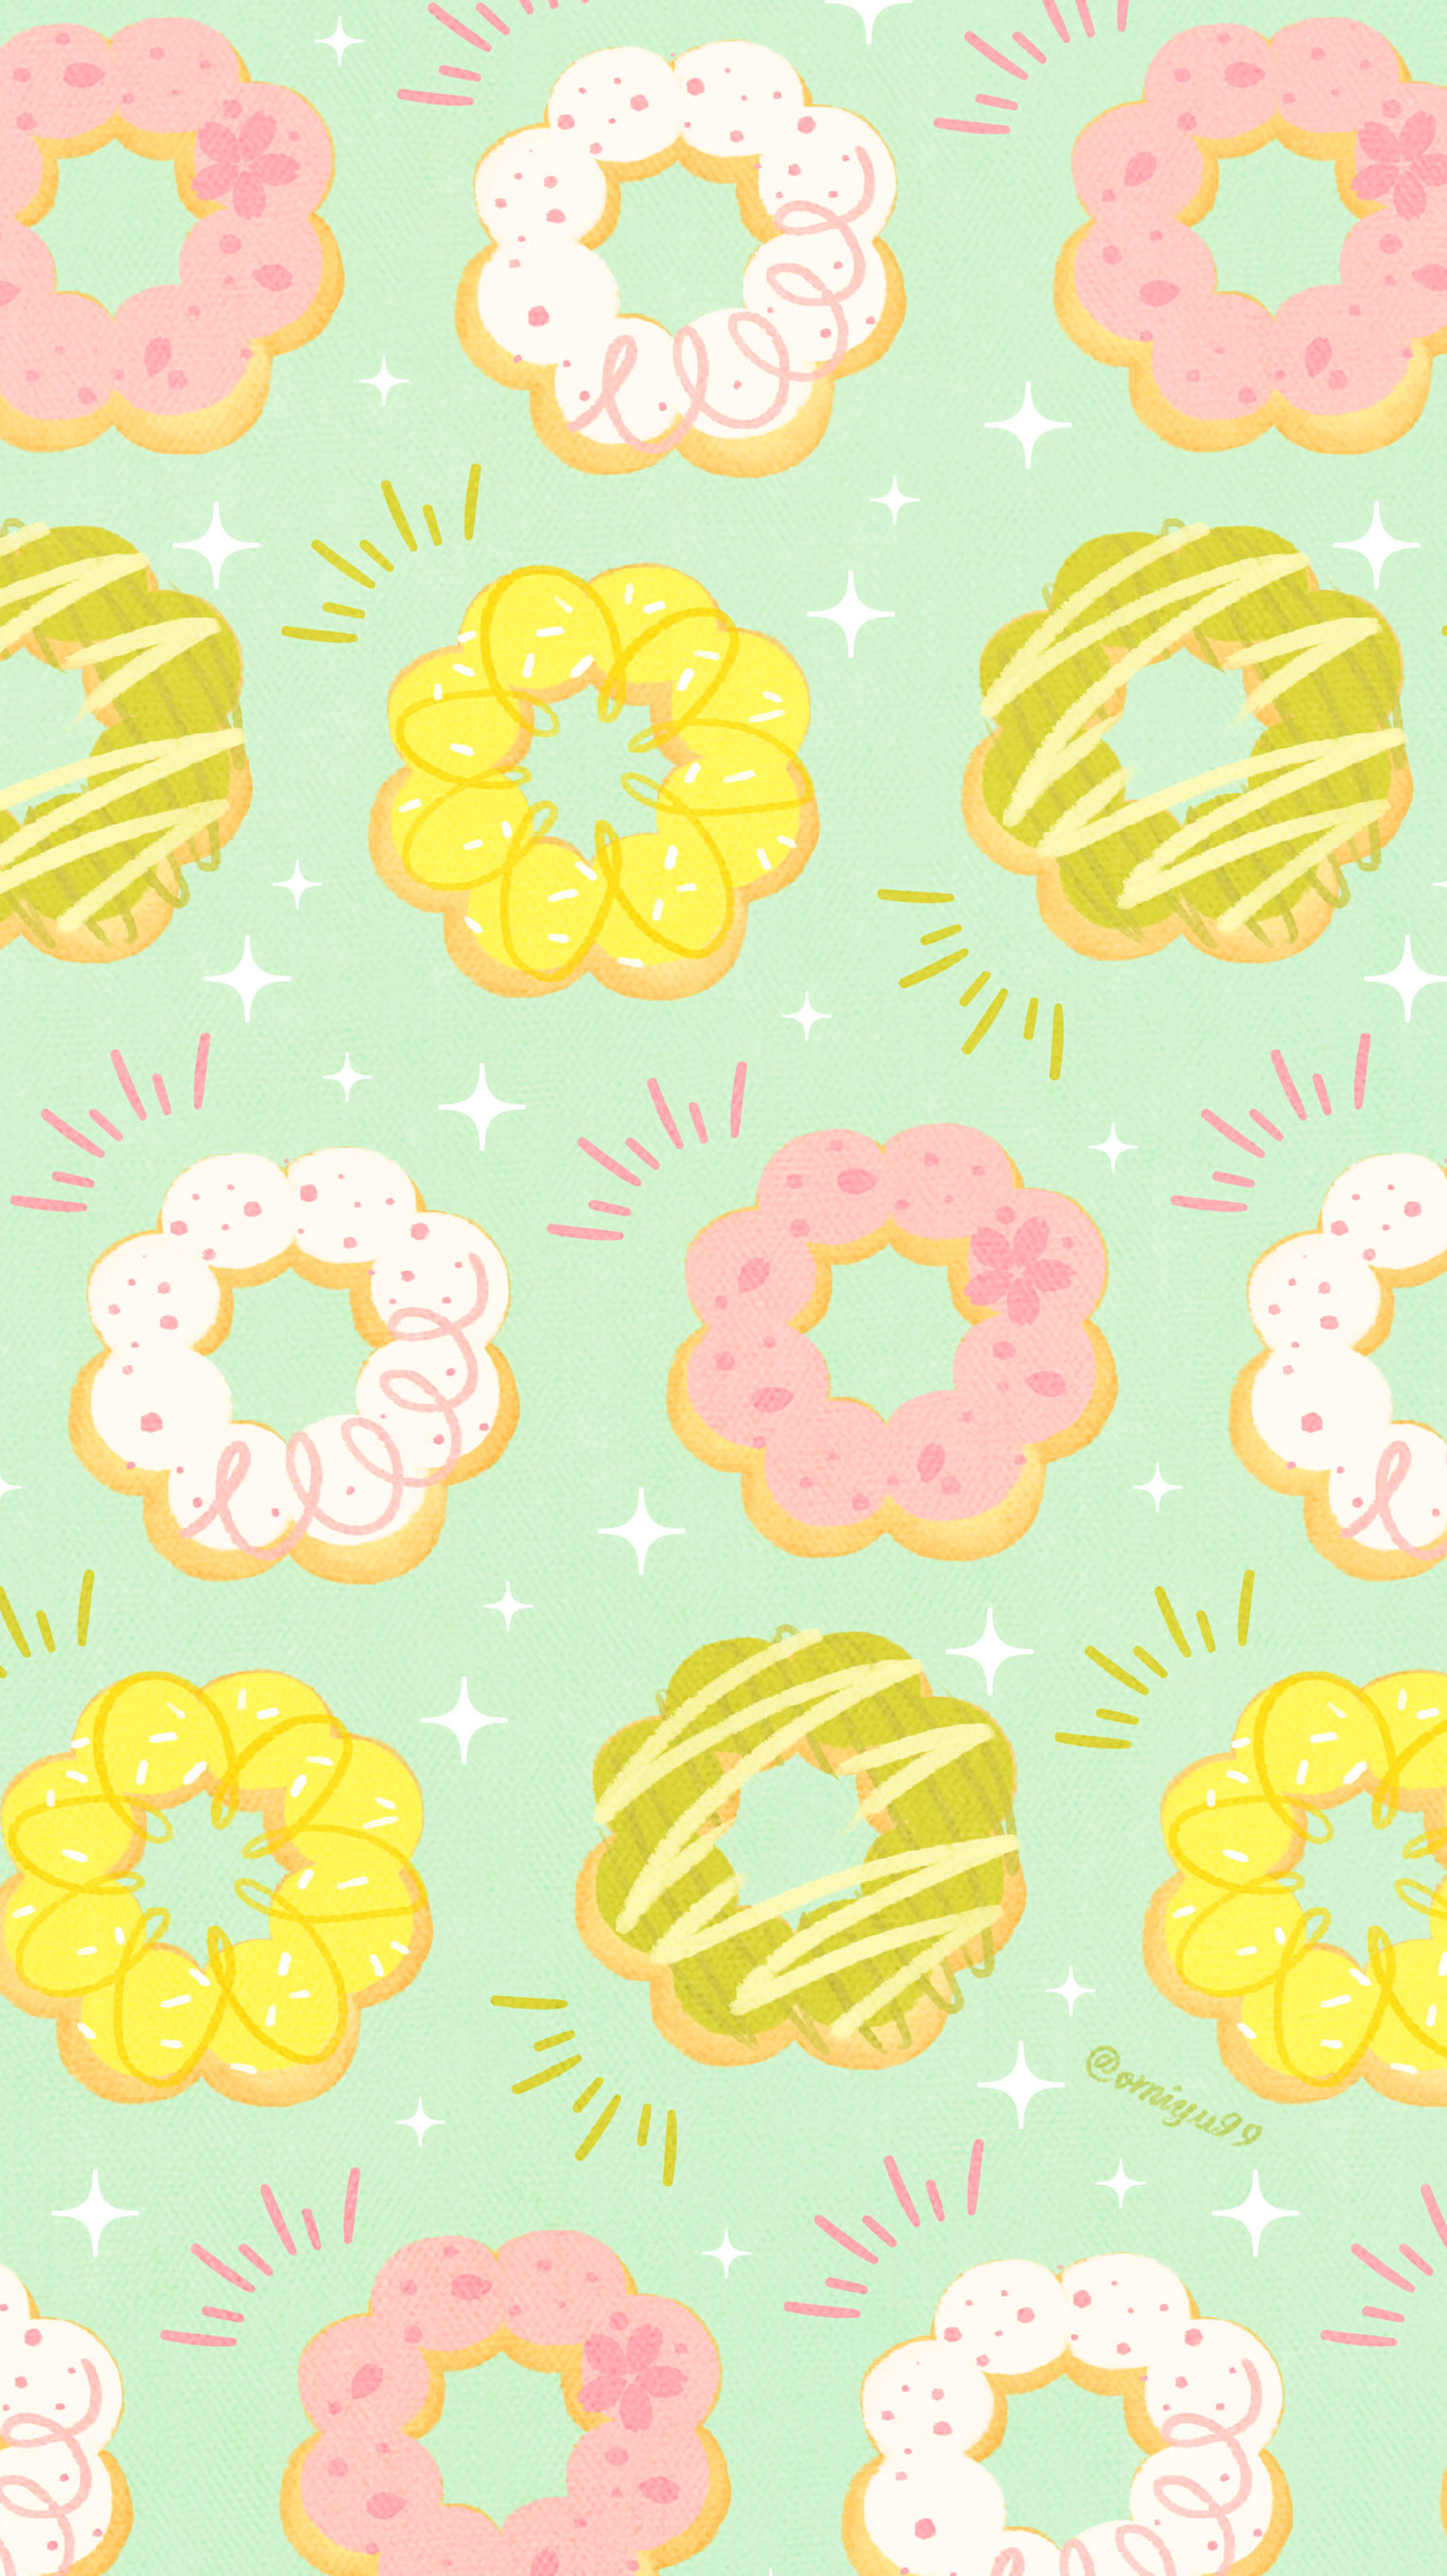 Omiyu お返事遅くなります もちリングドーナツな壁紙 Illust Illustration 壁紙 イラスト Iphone壁紙 ドーナツ Donuts 食べ物 T Co Gmsakhvmz5 Twitter